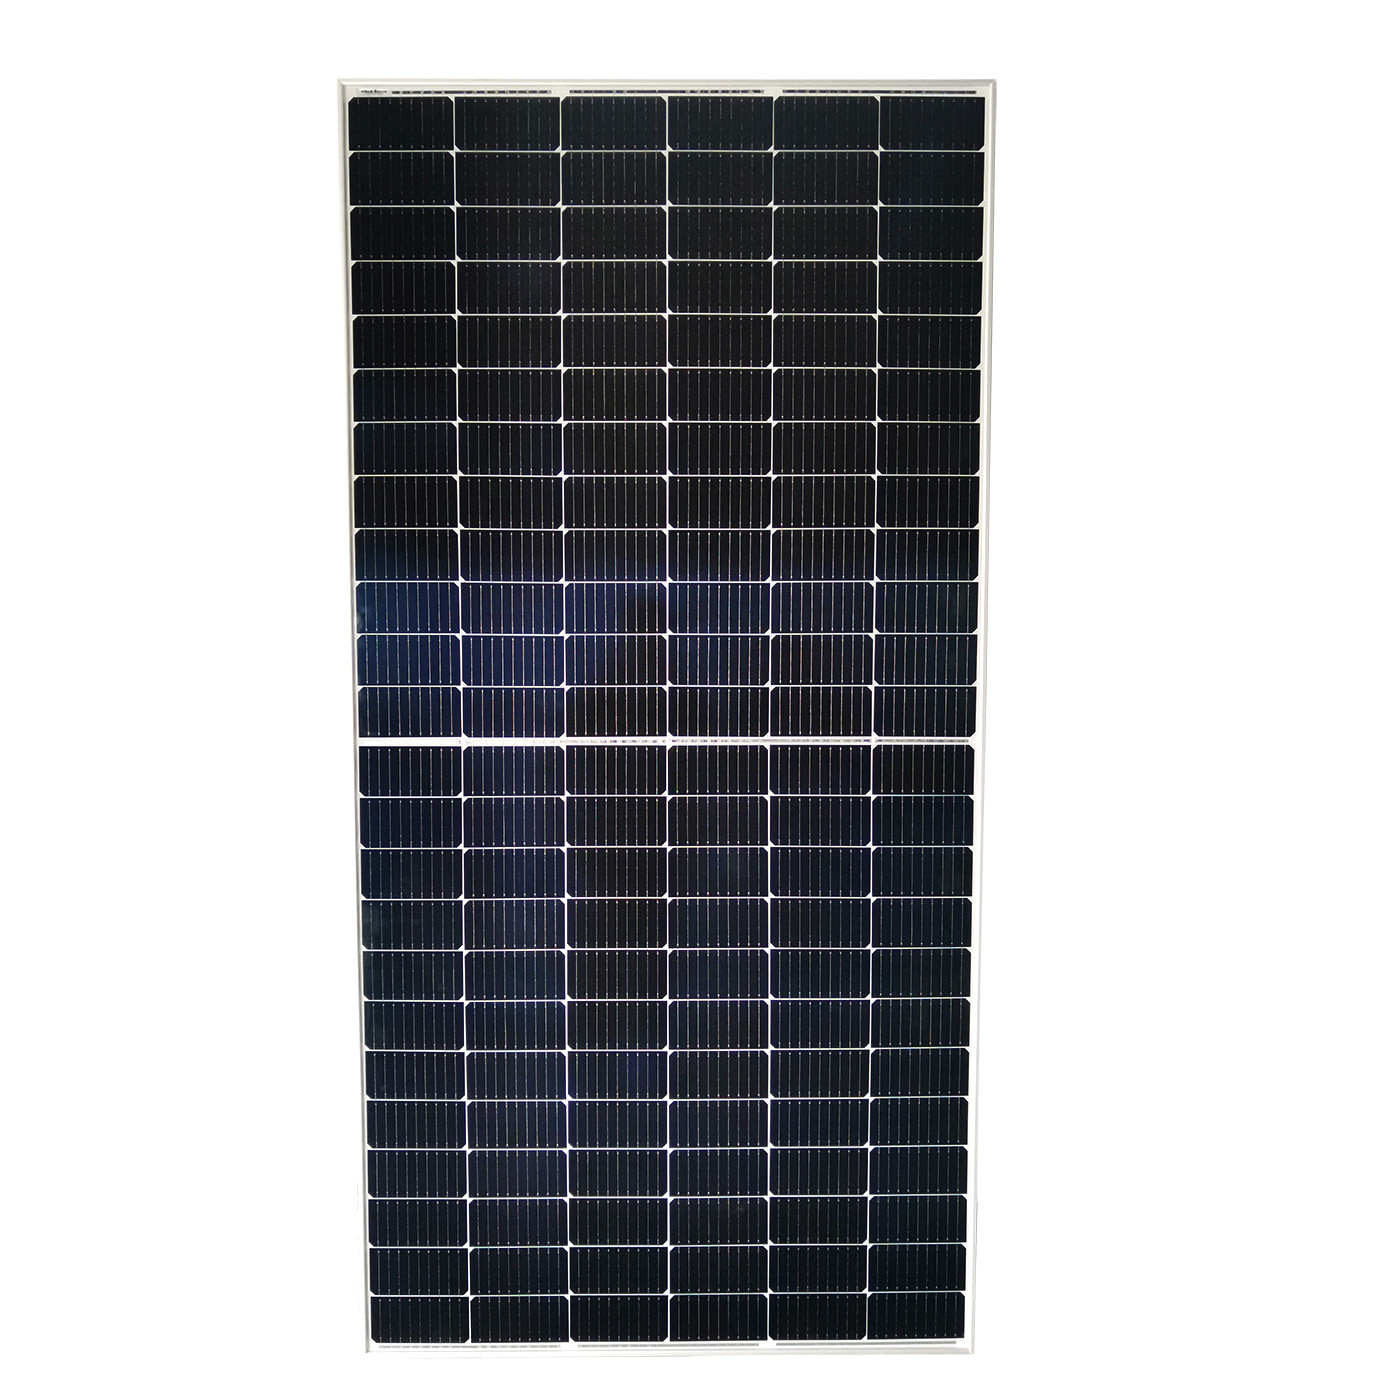 PERC Half Cell Solar Power Panel For Electricity 300W 330W 350W 380W 400W 500W